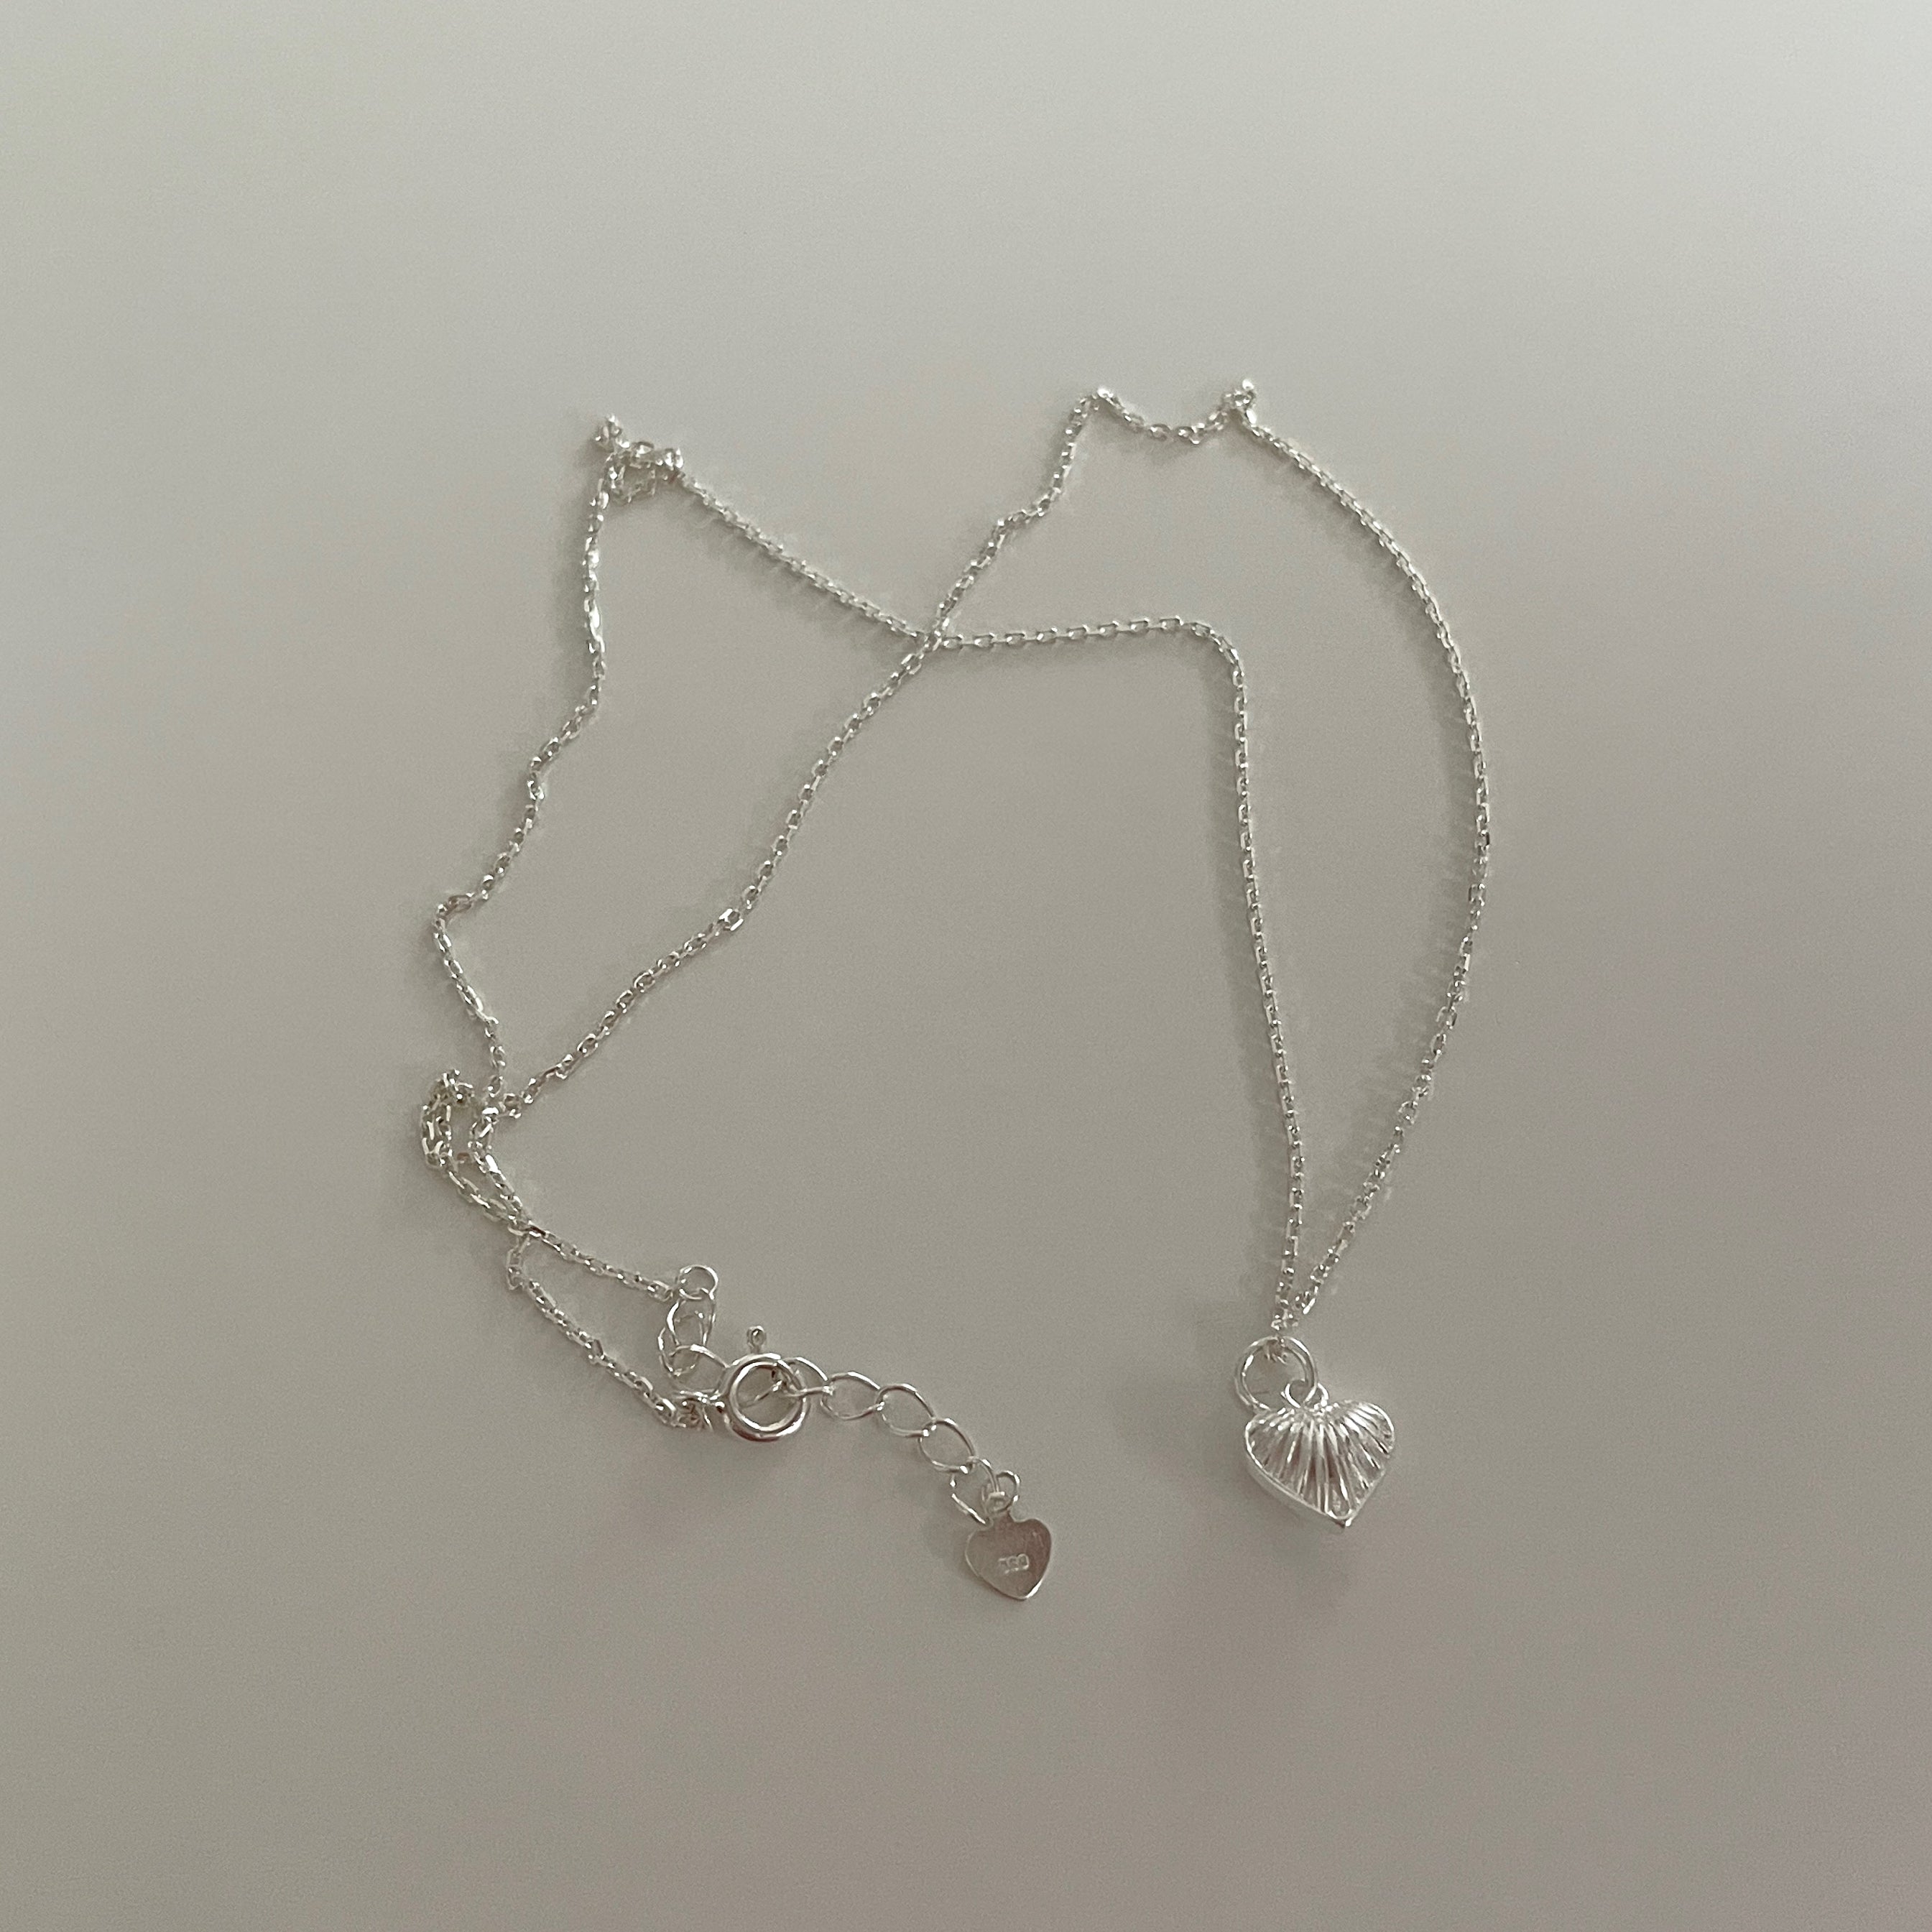 deviant heart necklace